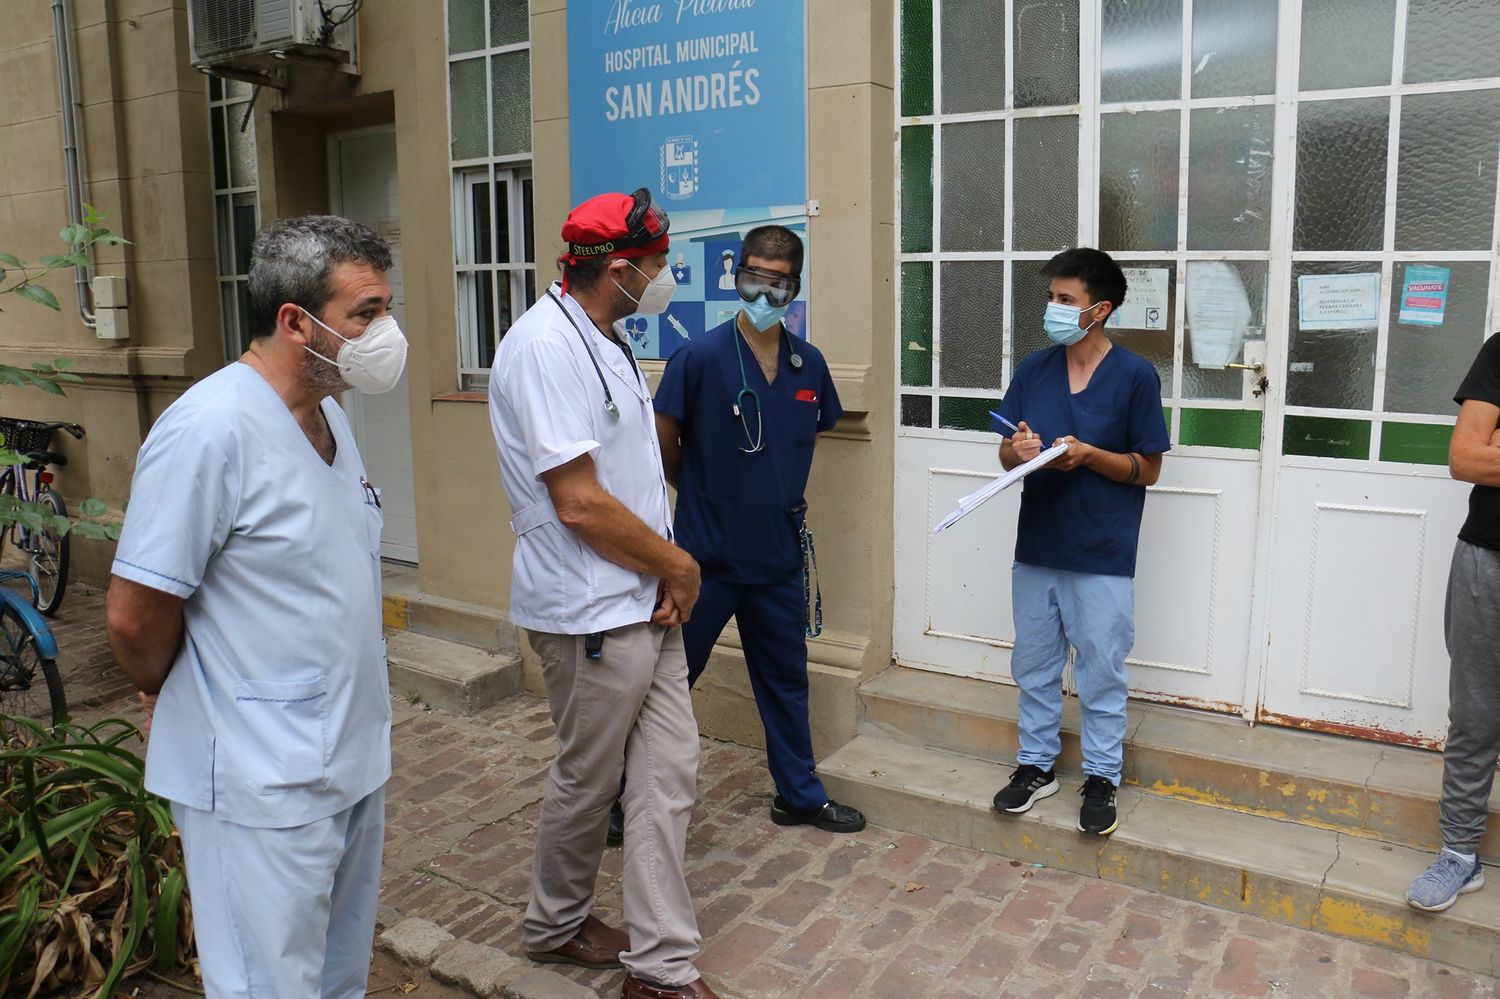 Vacunación Covid en San Andrés de Giles: Inician sumario porque vacunaron a personas que no eran personal sanitario